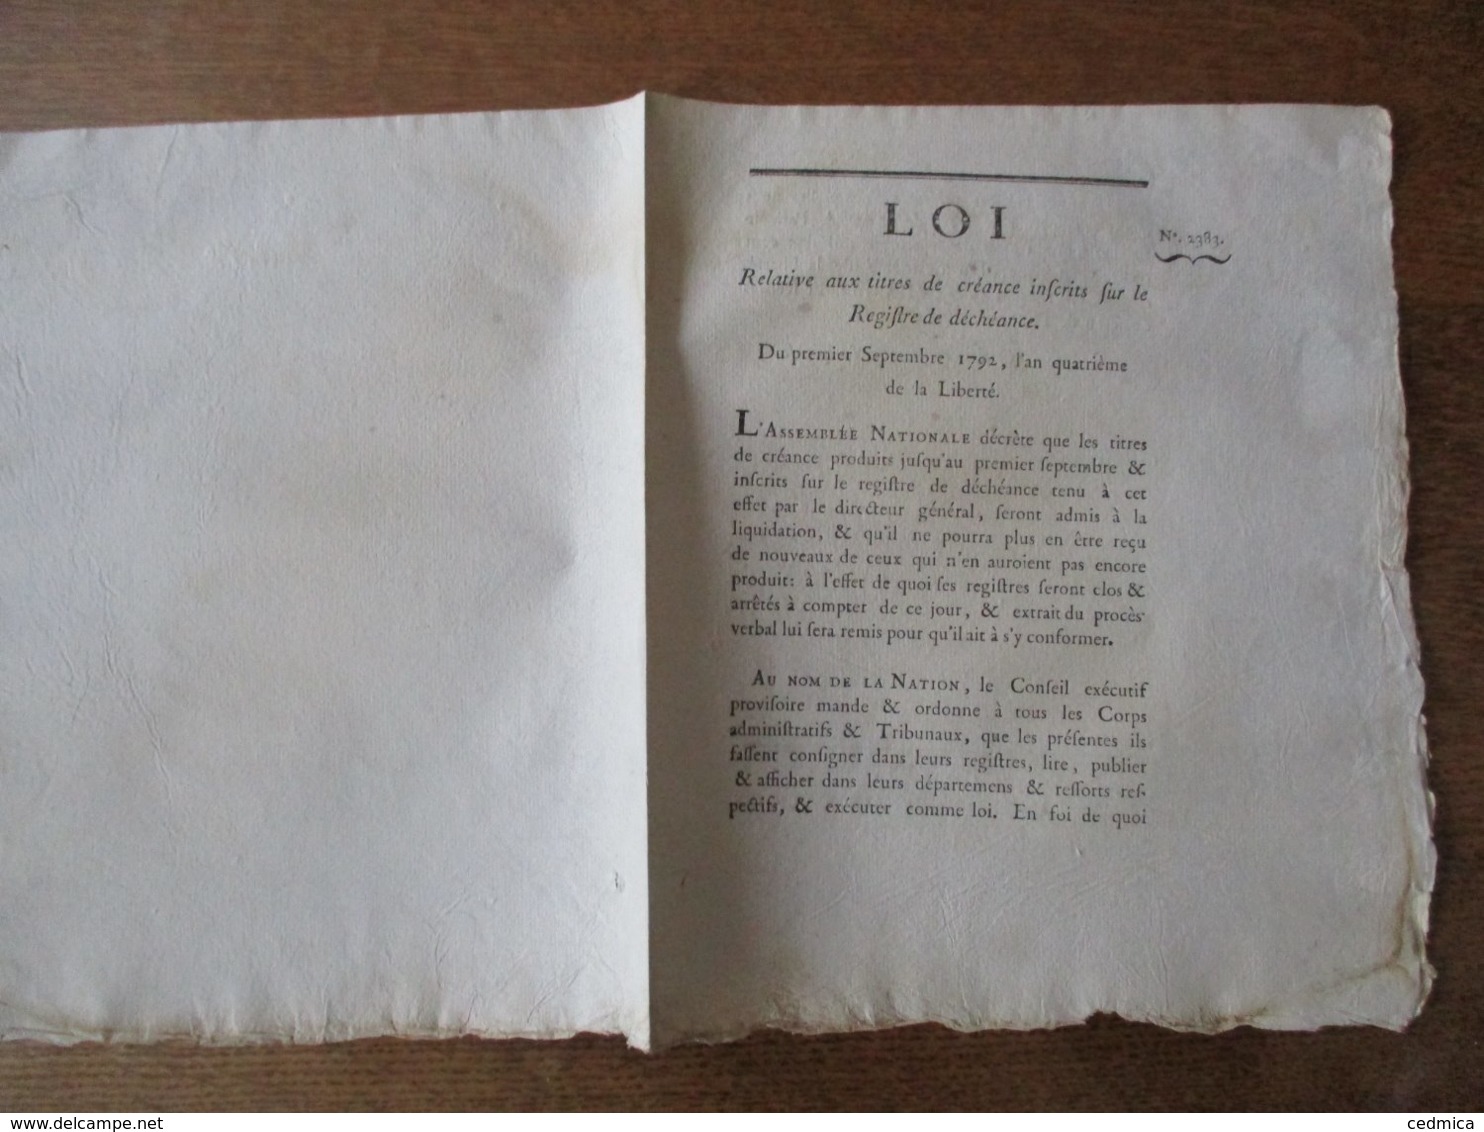 LOI DU PREMIER SEPTEMBRE 1792 RELATIVE AUX TITRES DE CREANCE INSCRITS SUR REGISTRE DE DECHEANCE - Décrets & Lois